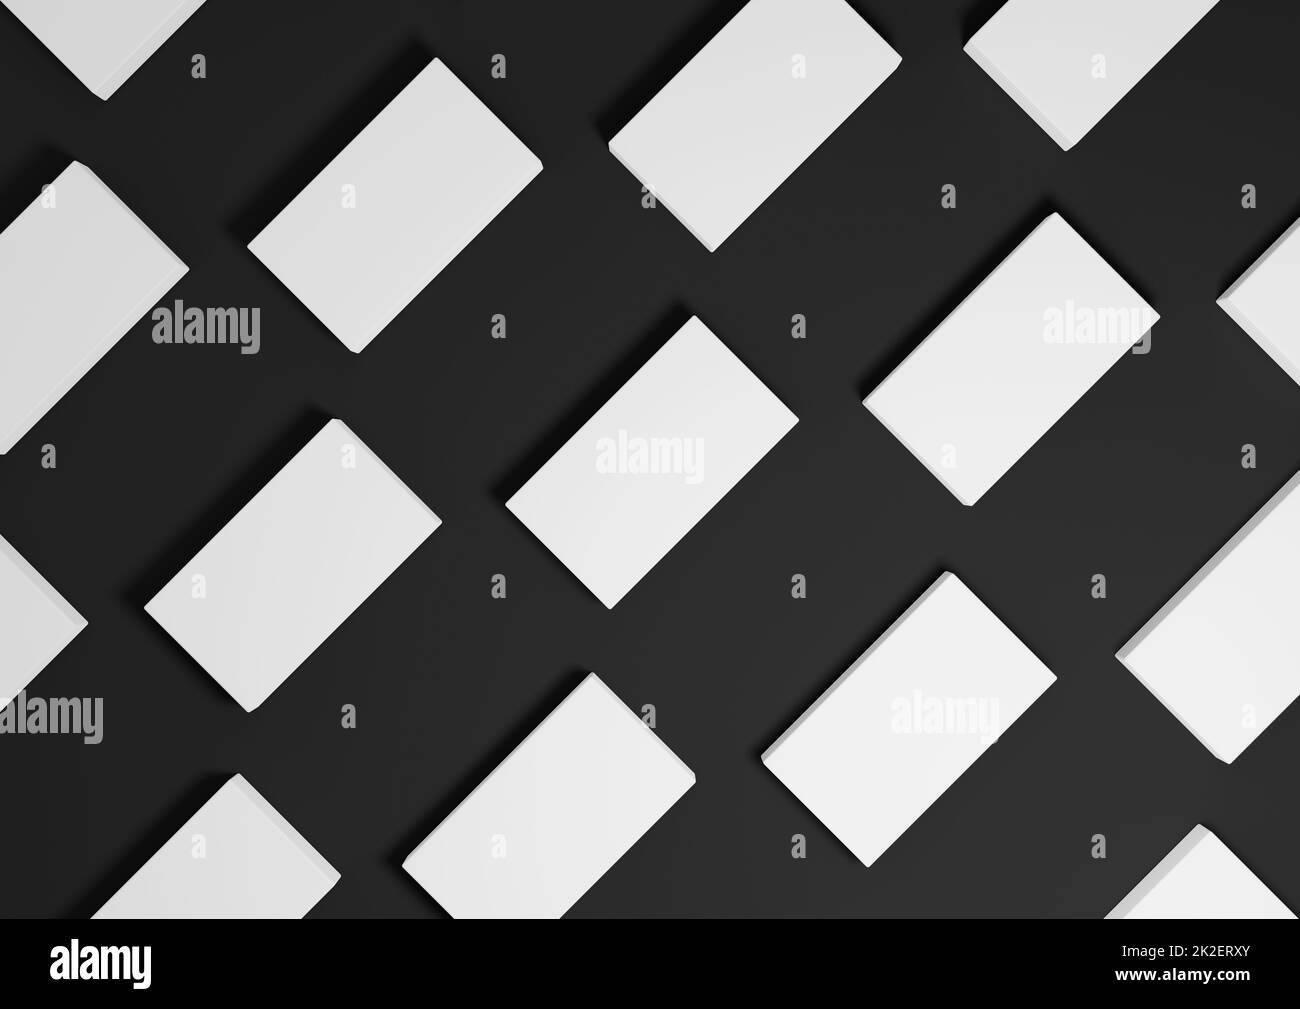 Nero, grigio scuro, bianco e nero, rendering 3D minimal, semplice, moderno display piatto con vista dall'alto sullo sfondo con supporti quadrati ripetitivi in un motivo Foto Stock